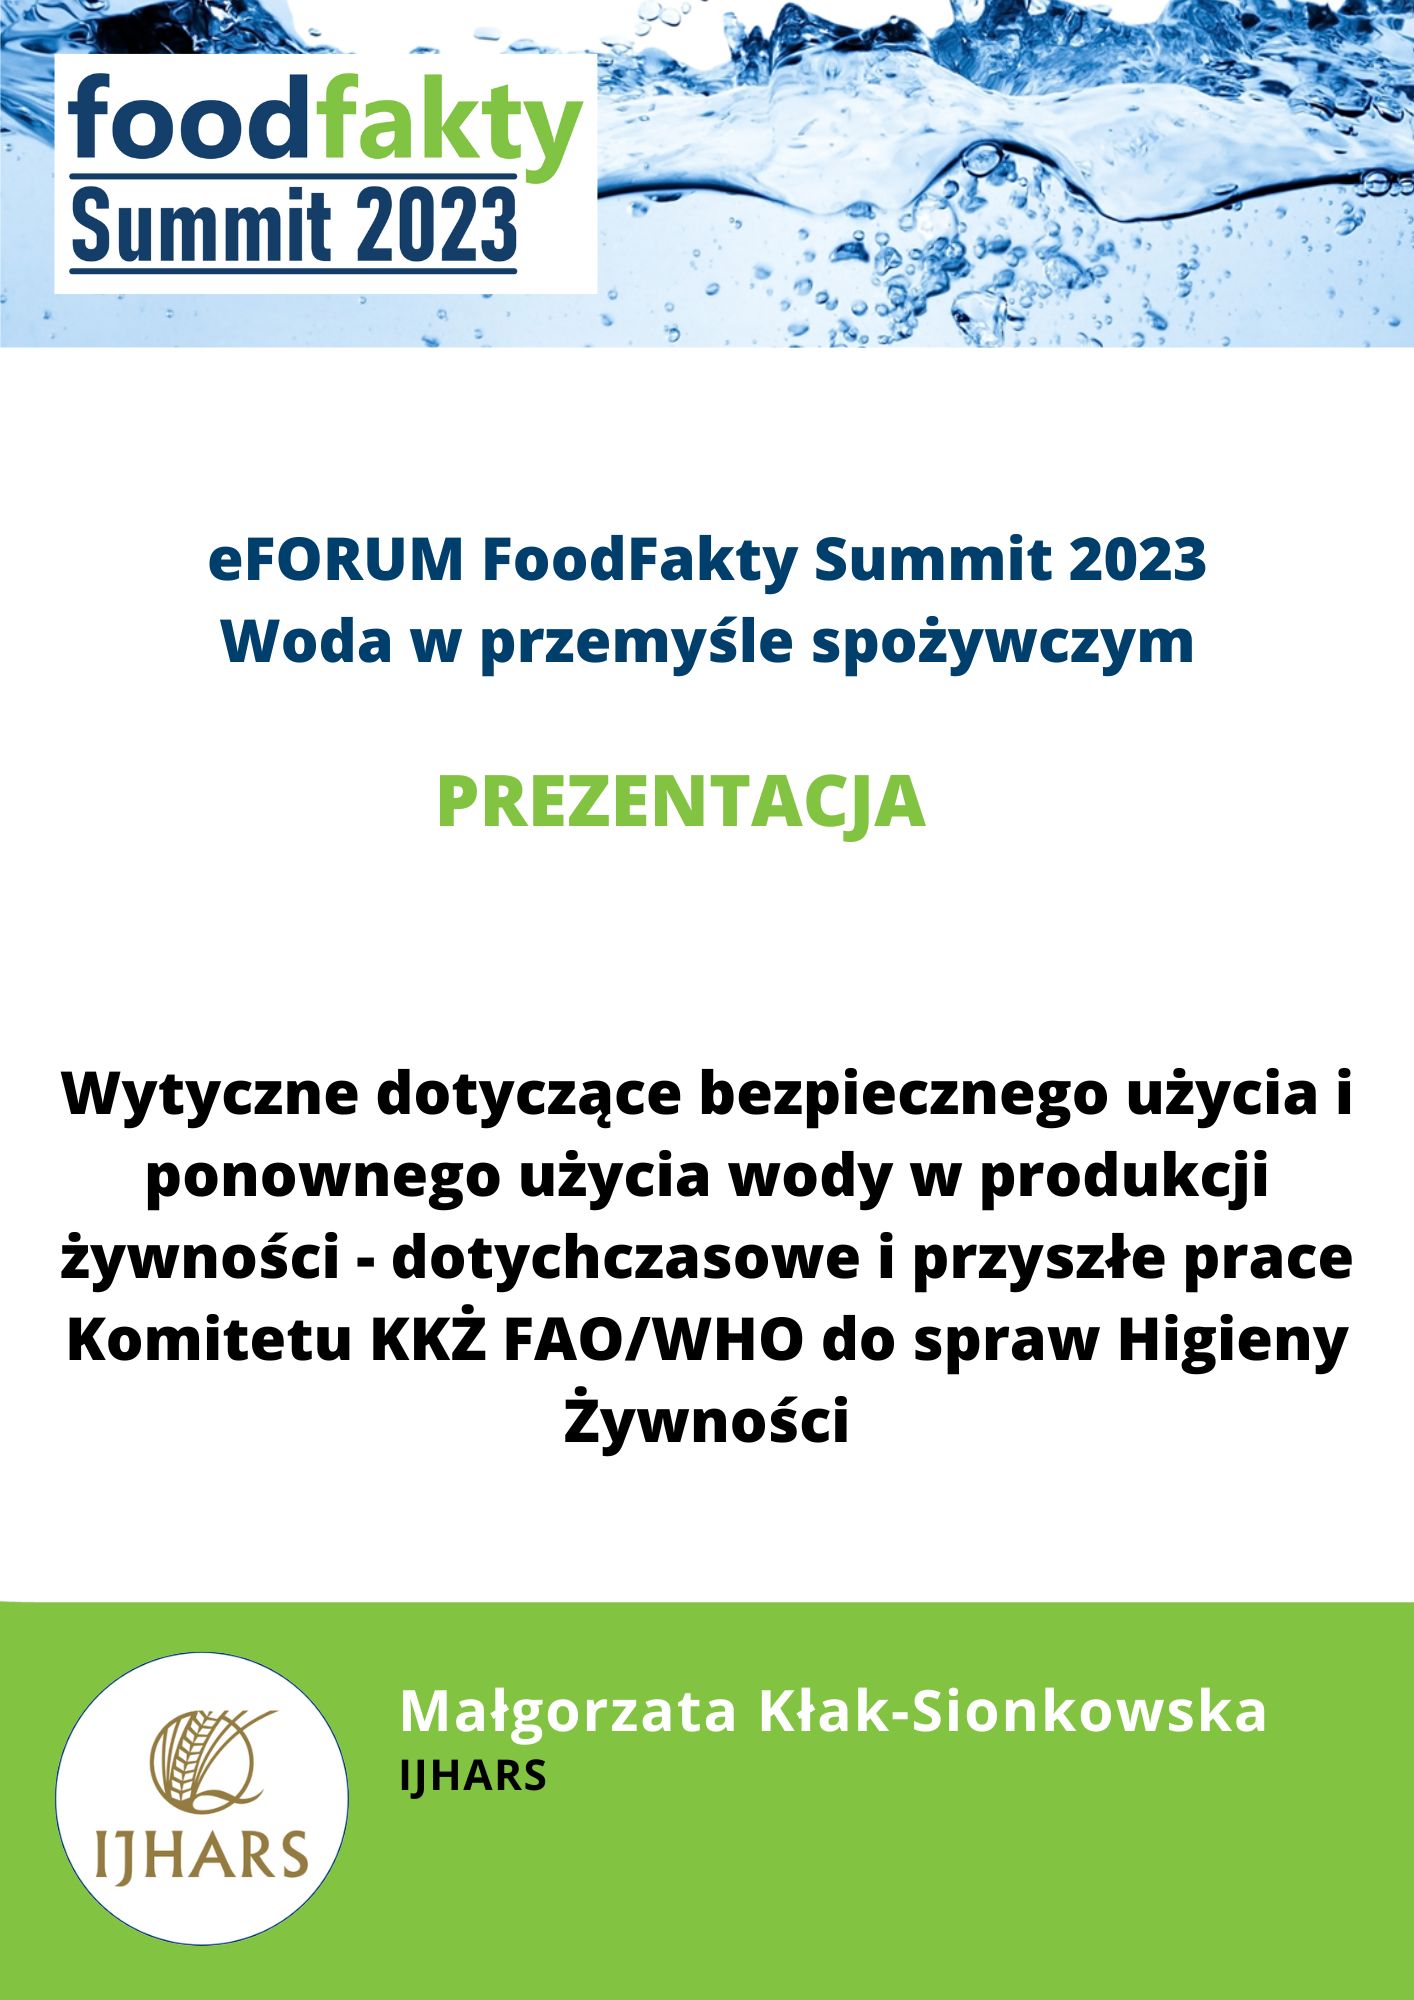 FoodFakty Summit Woda w przemyśle spożywczym - prezentacja IJHARS